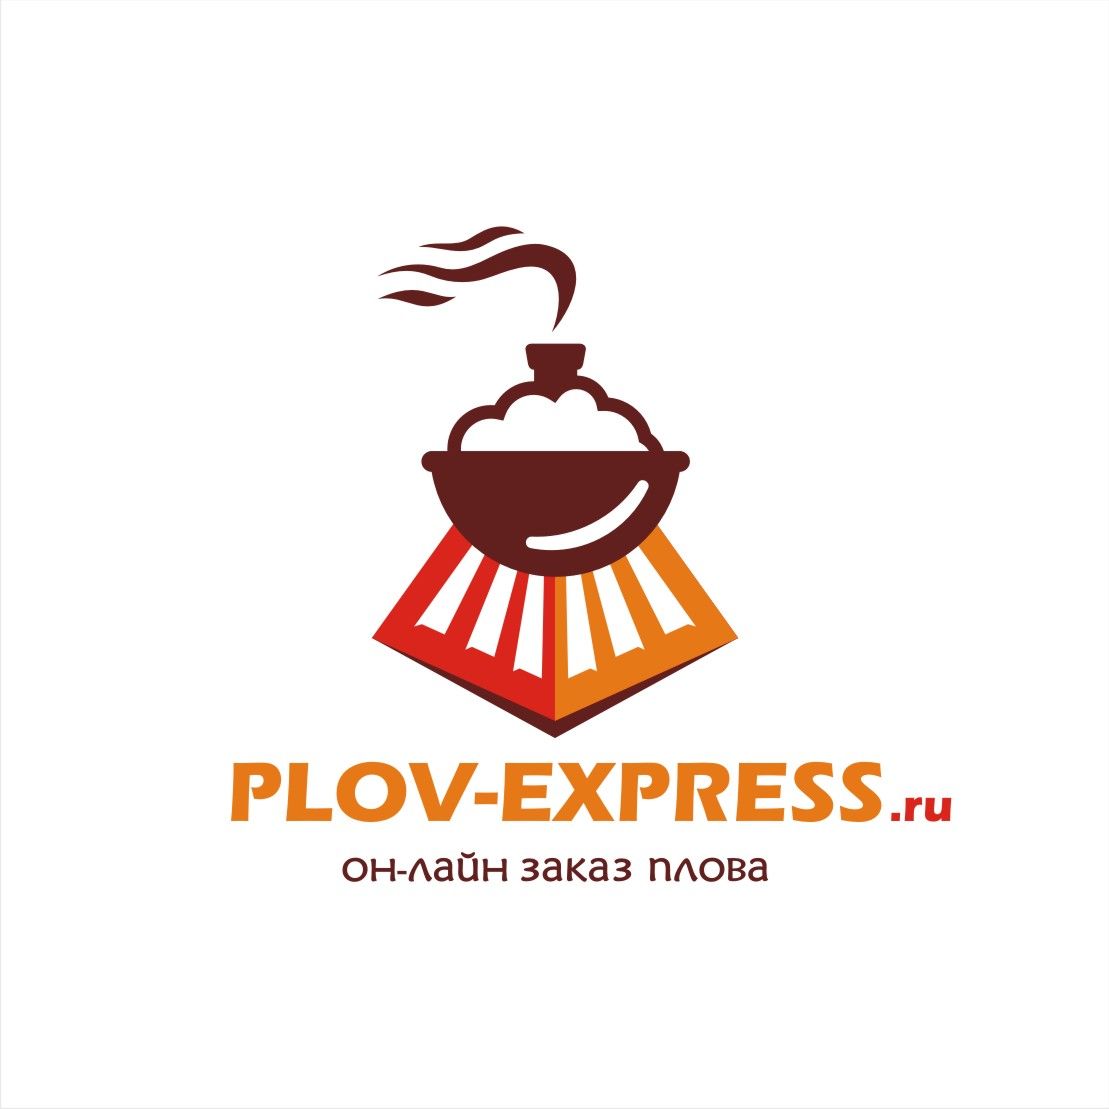 Лого и фирмстиль для сайта plov-express.ru - дизайнер flea